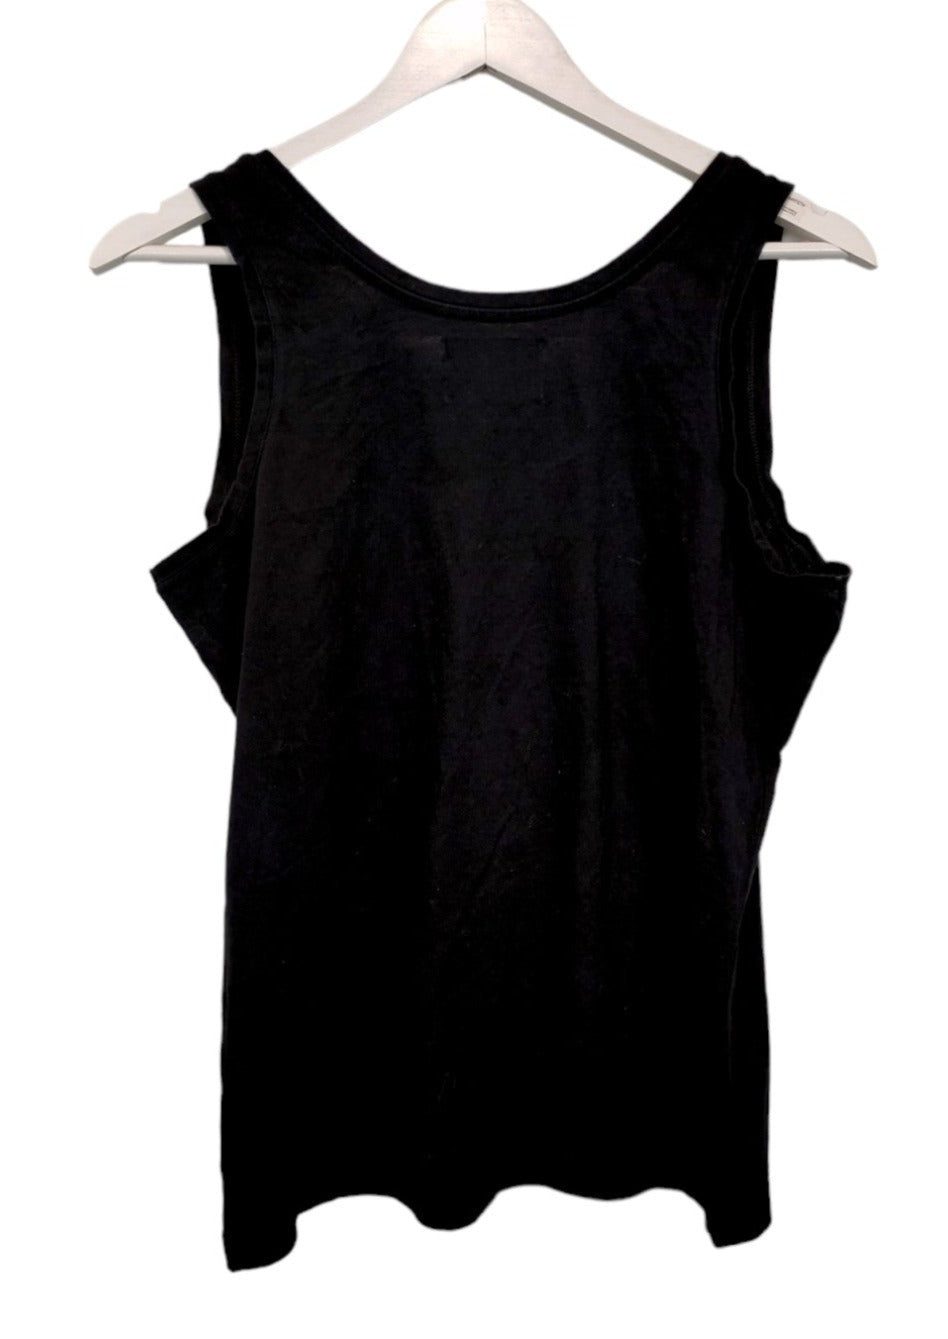 Αμάνικη, Γυναικεία Αμάνικη Μπλούζα CALVIN KLEIN σε Μαύρο Χρώμα (M/L)